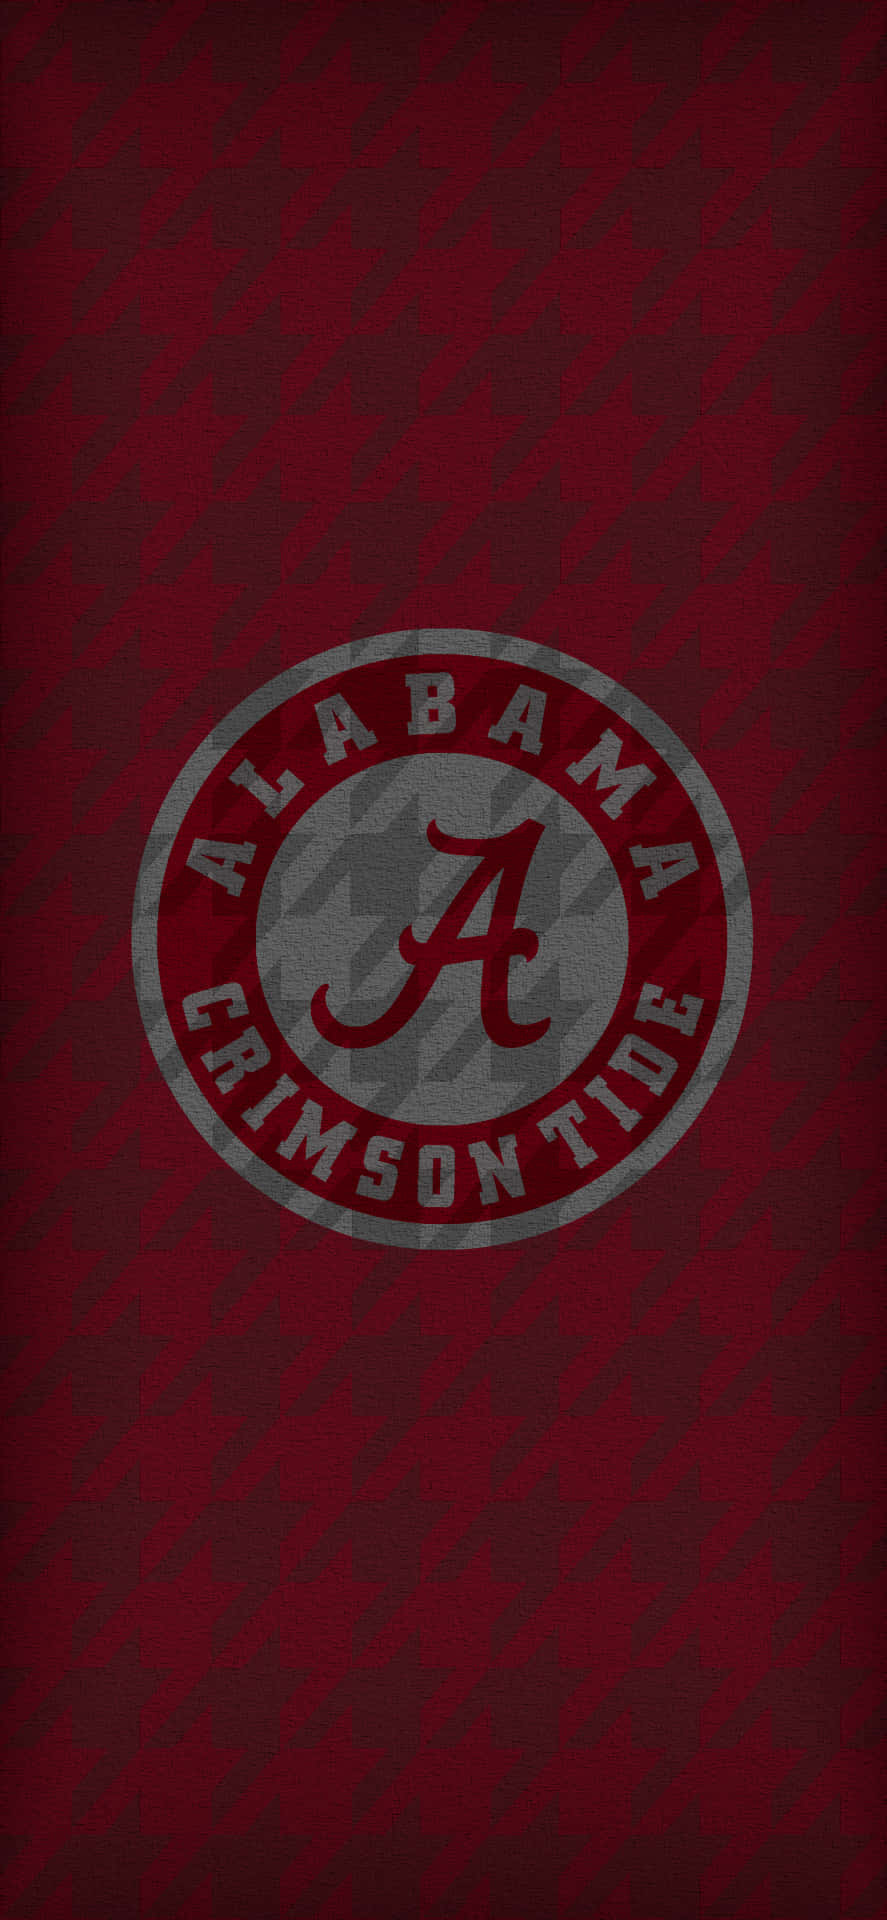 Fondode Pantalla Rojo Intenso De Alabama Football Para Iphone. Fondo de pantalla